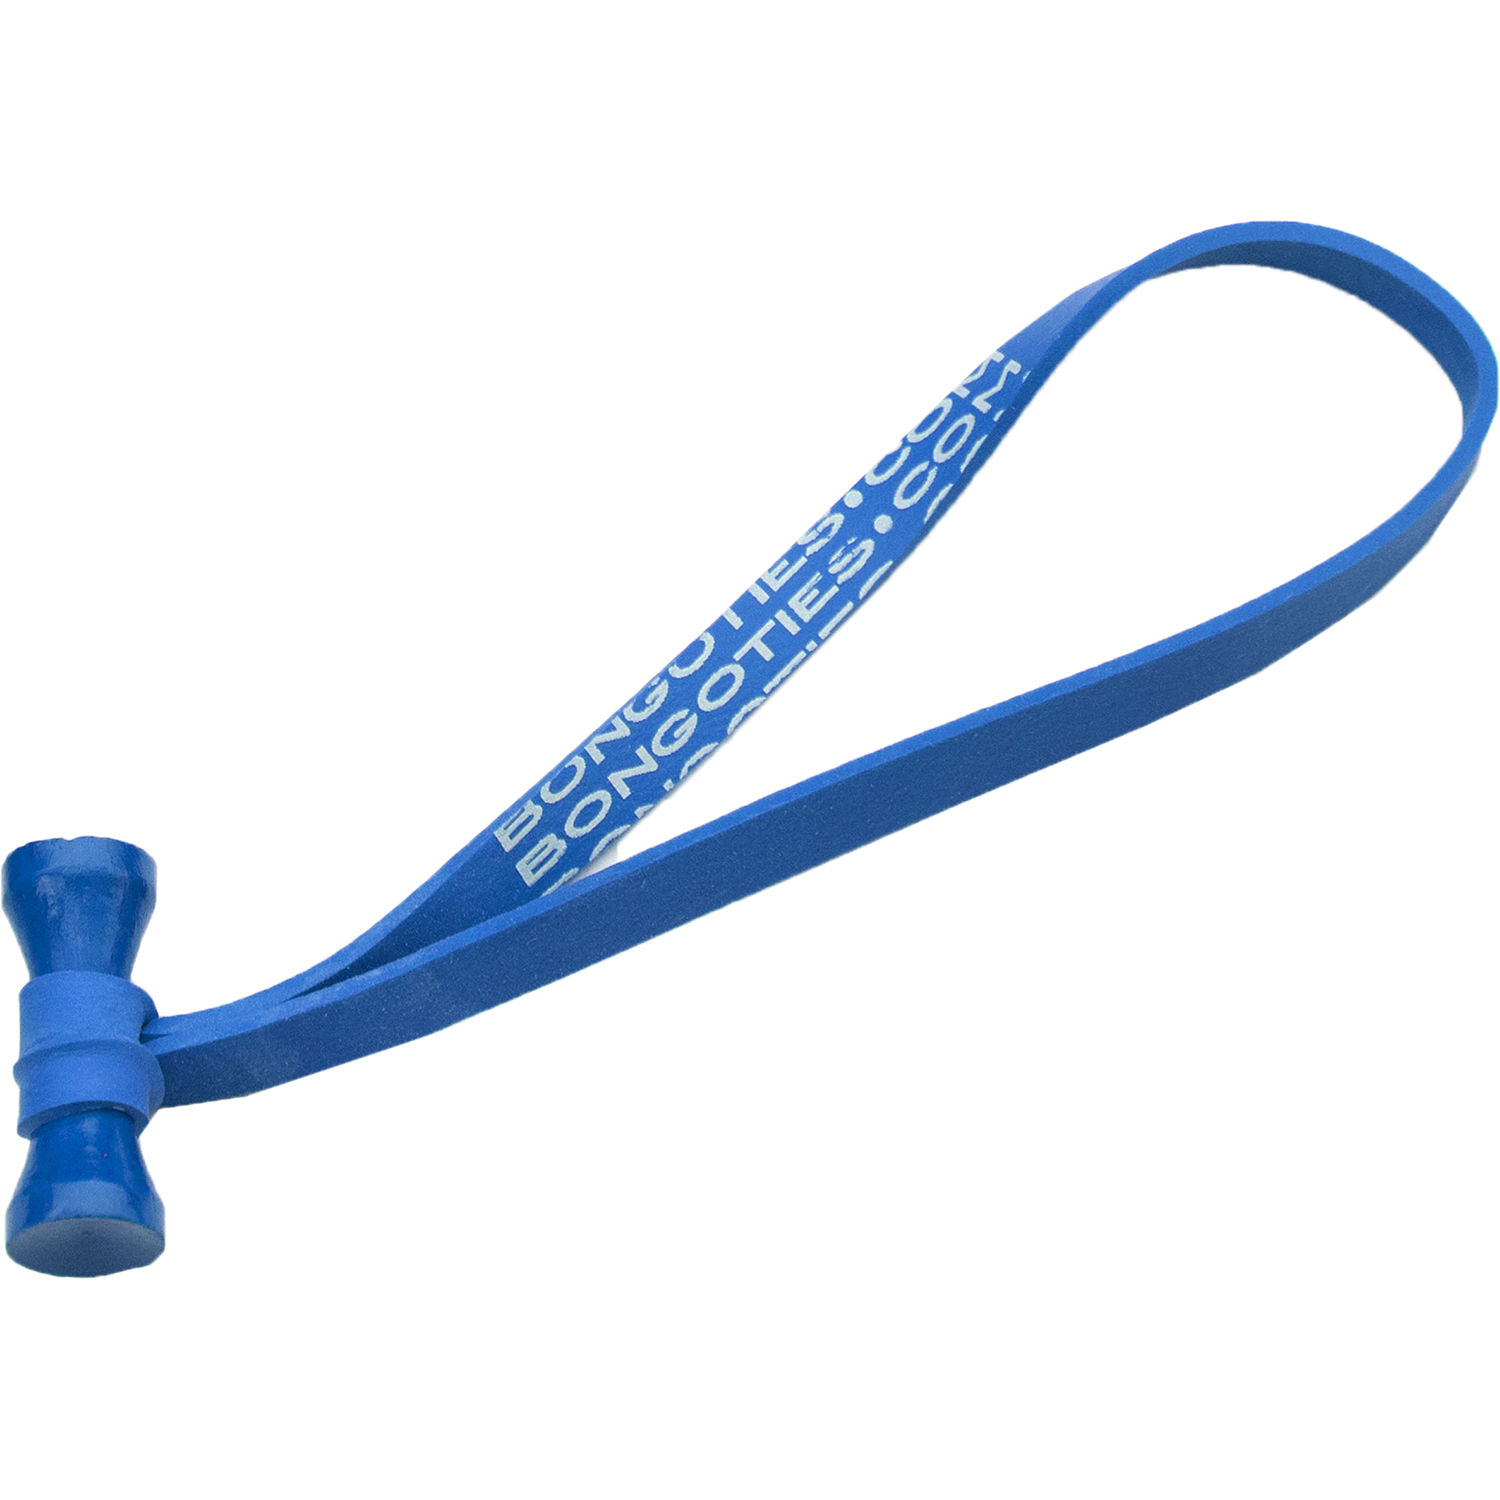 BongoTies 5" Elastic Cable Ties (10-Pack, Blue)